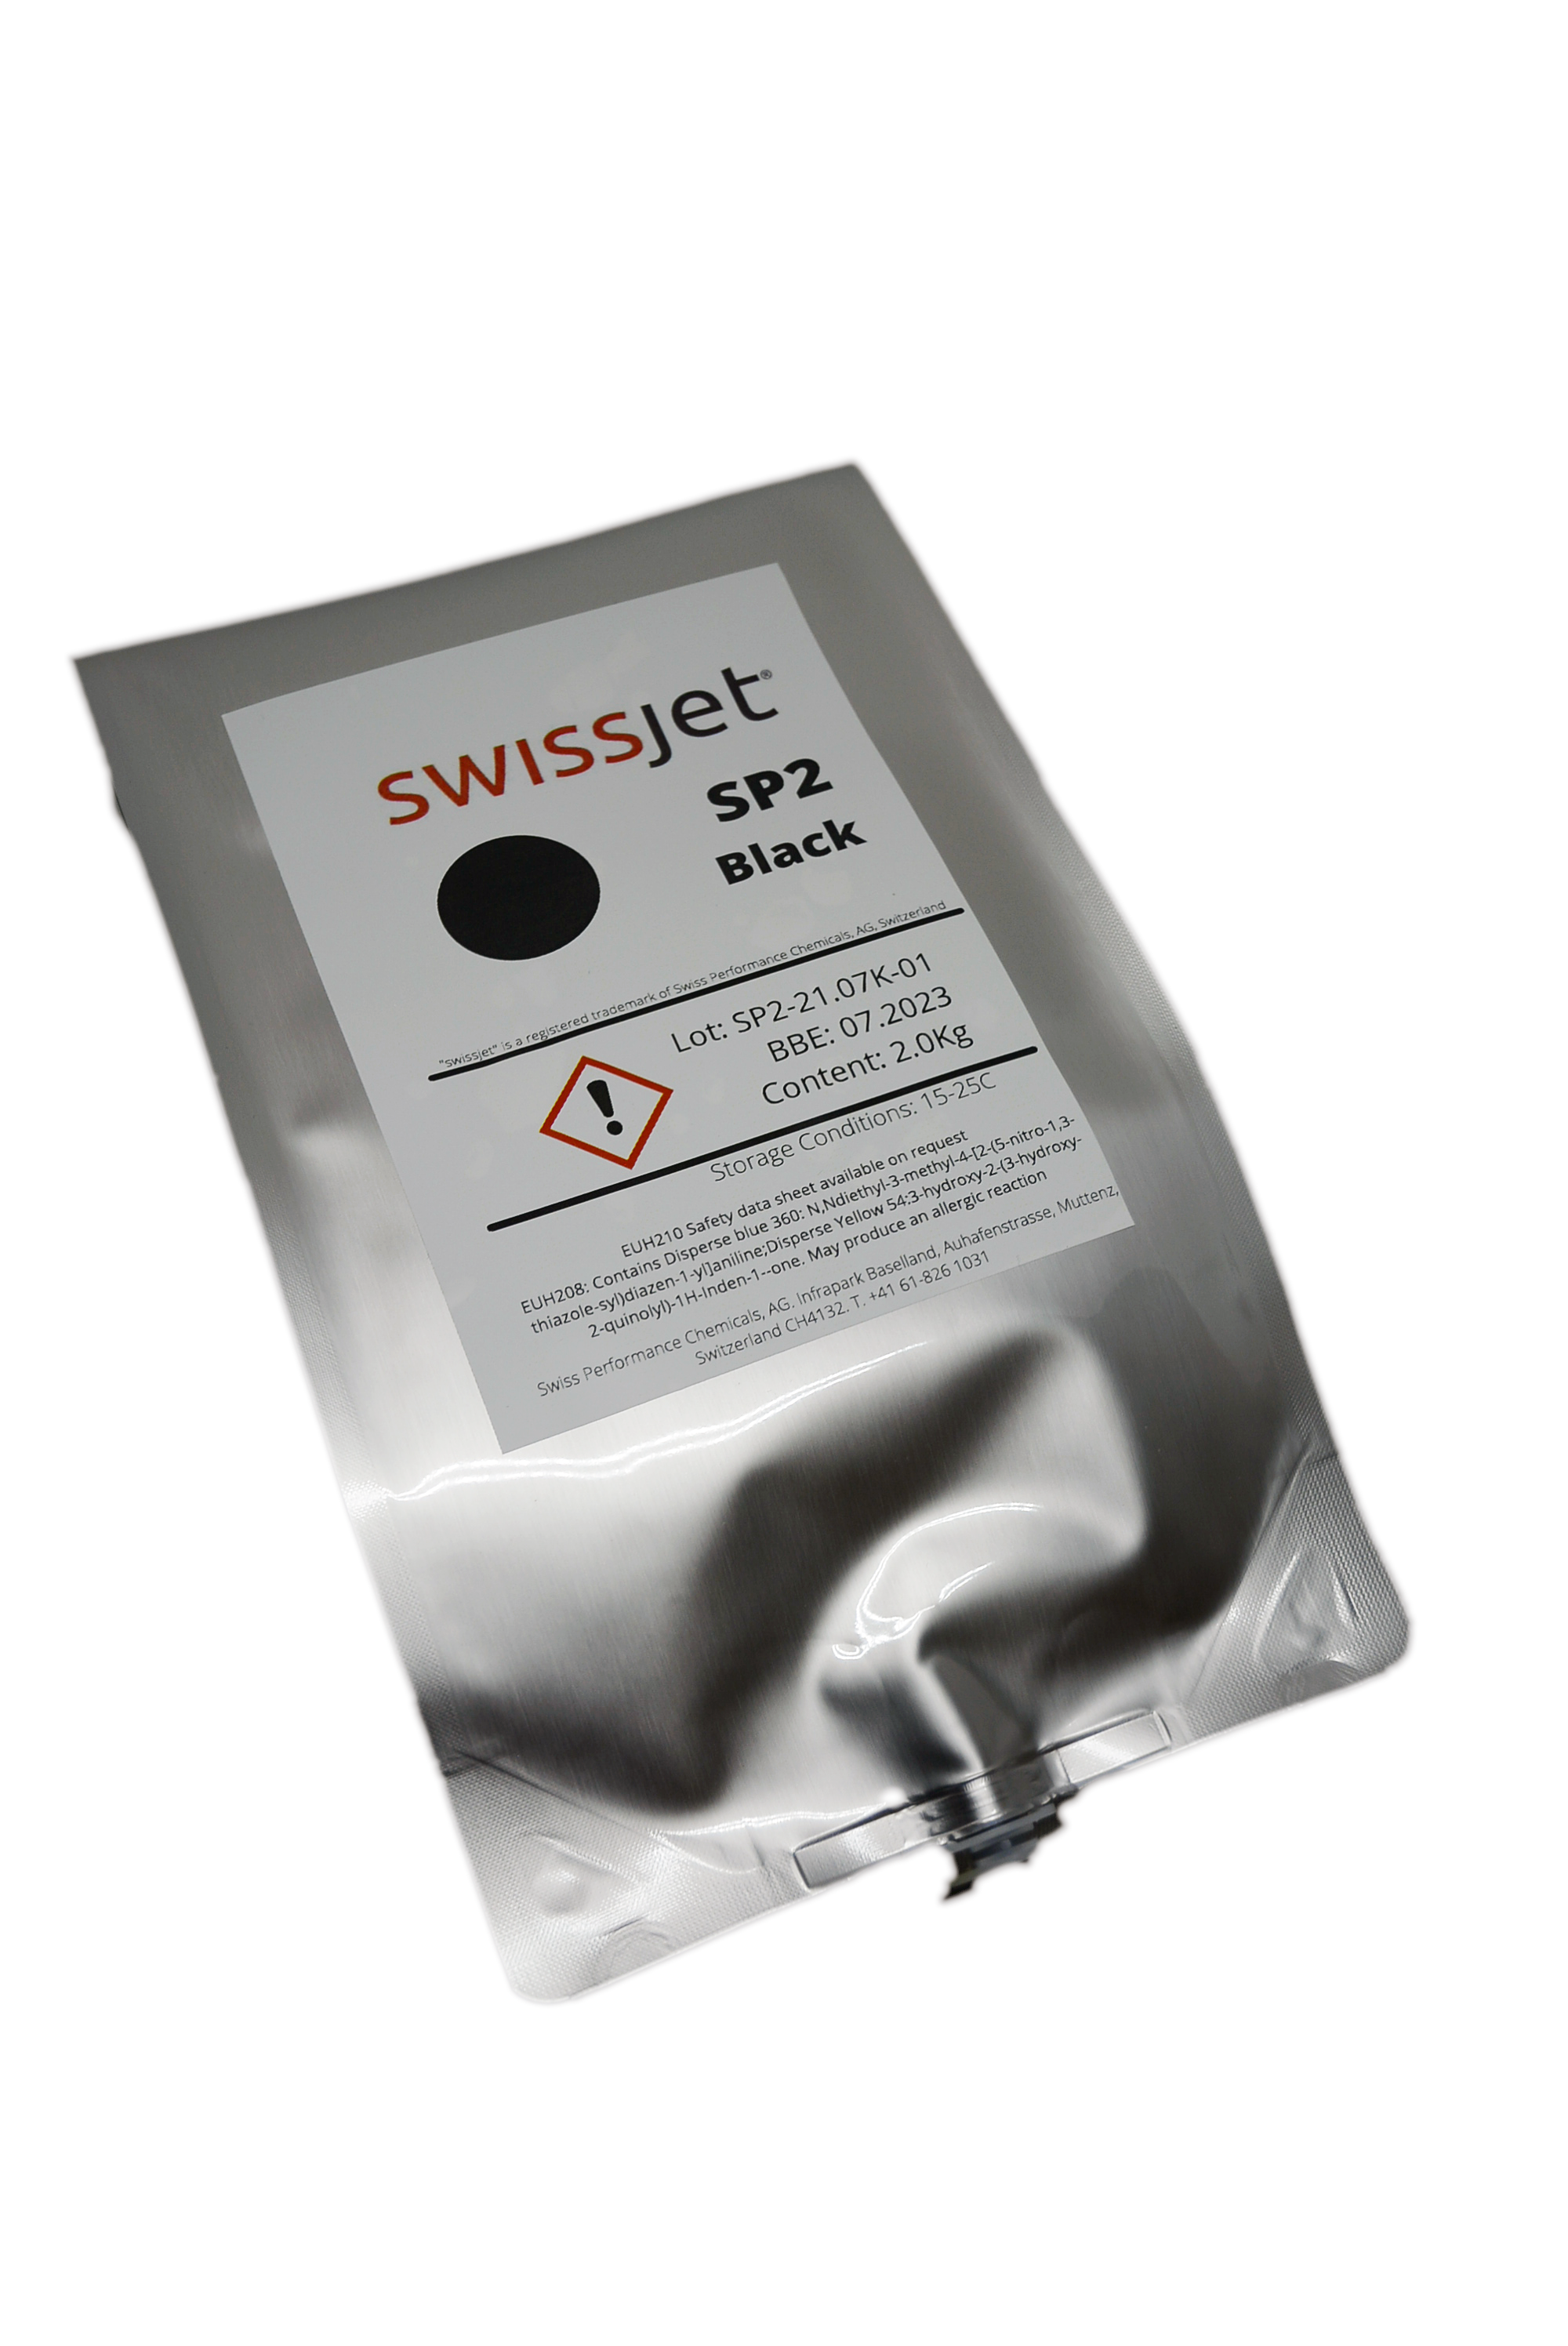 SWISSJET-SP2-BLACK